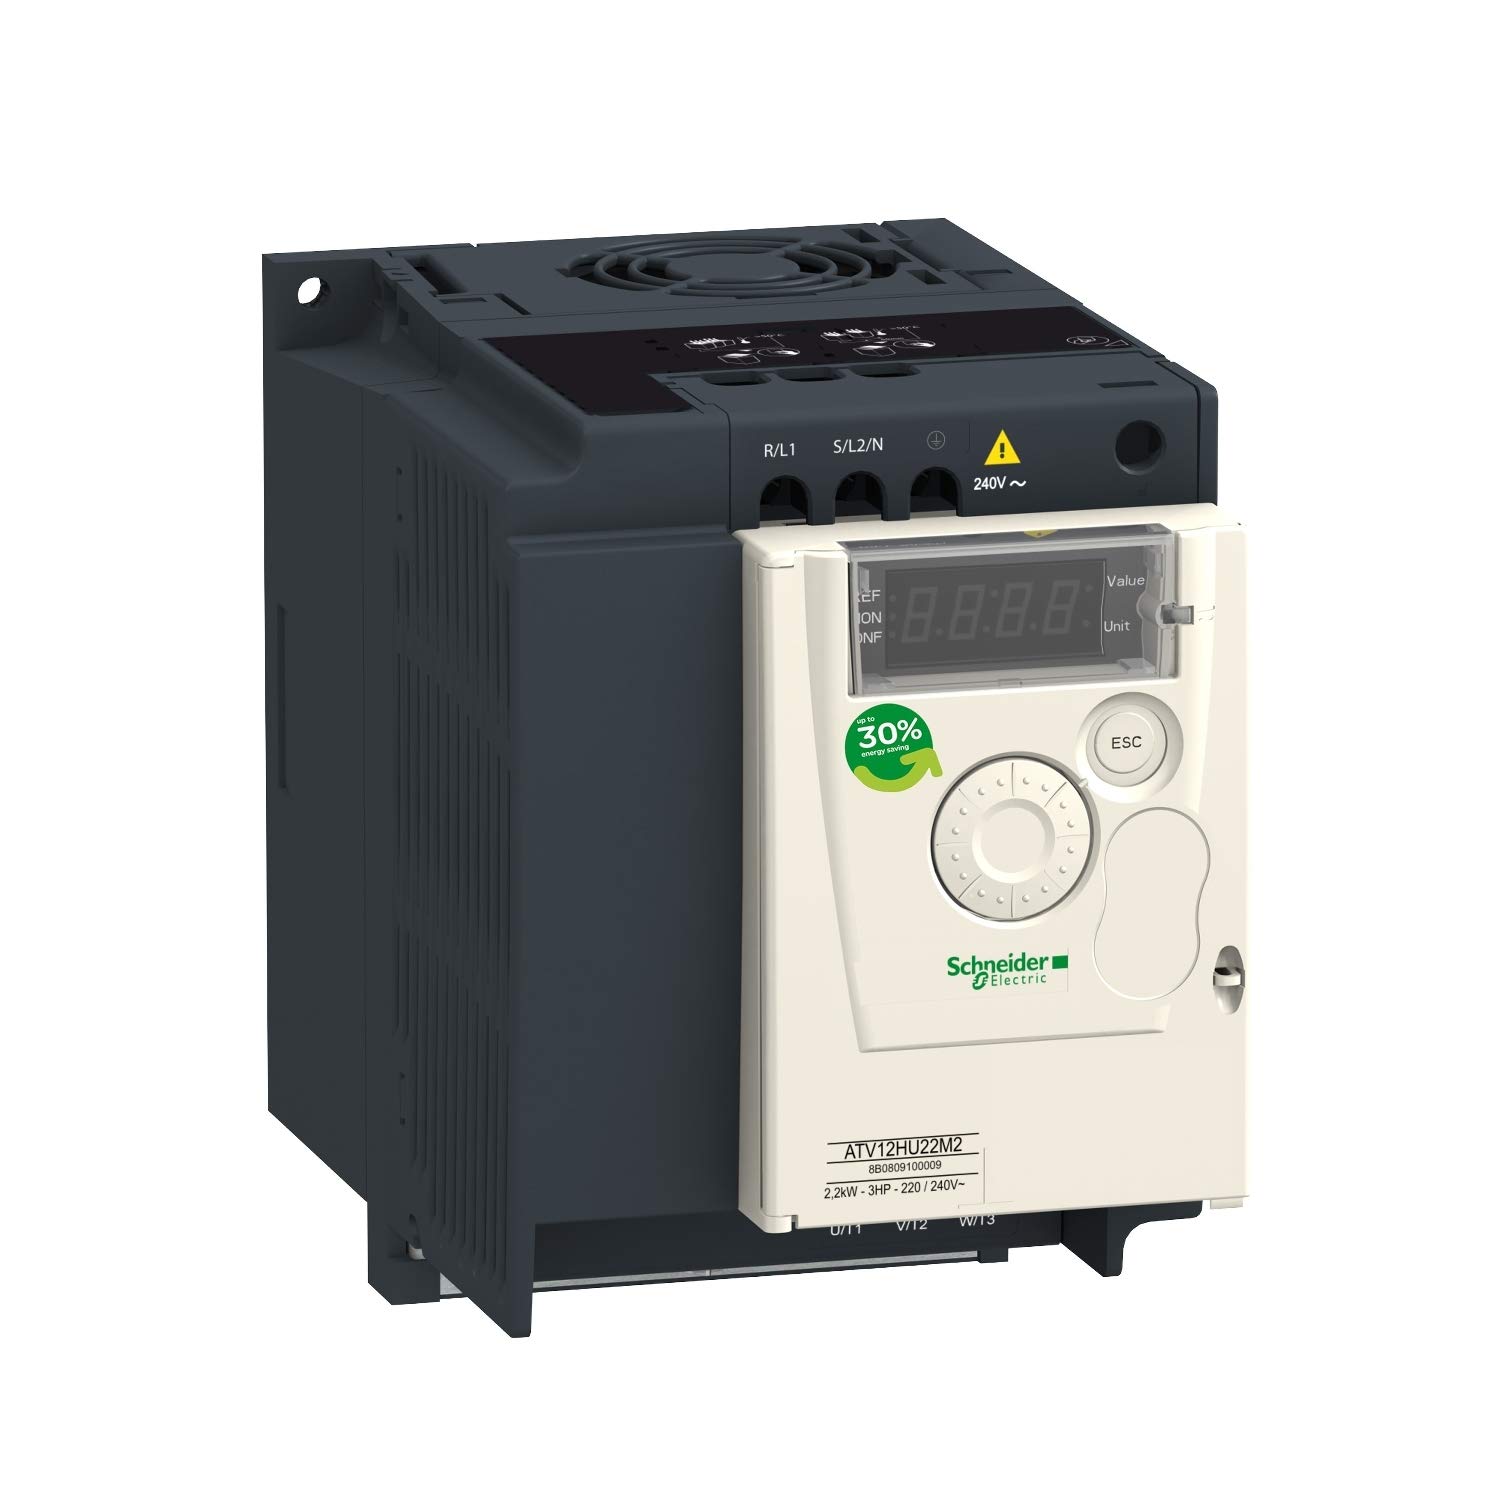 Schneider Electric - Altivar, Frequenzumrichter, 2,2kW, 3HP, 200-240V, 1-phasig, mit Kühlkörper, IP20 - ATV12HU22M2